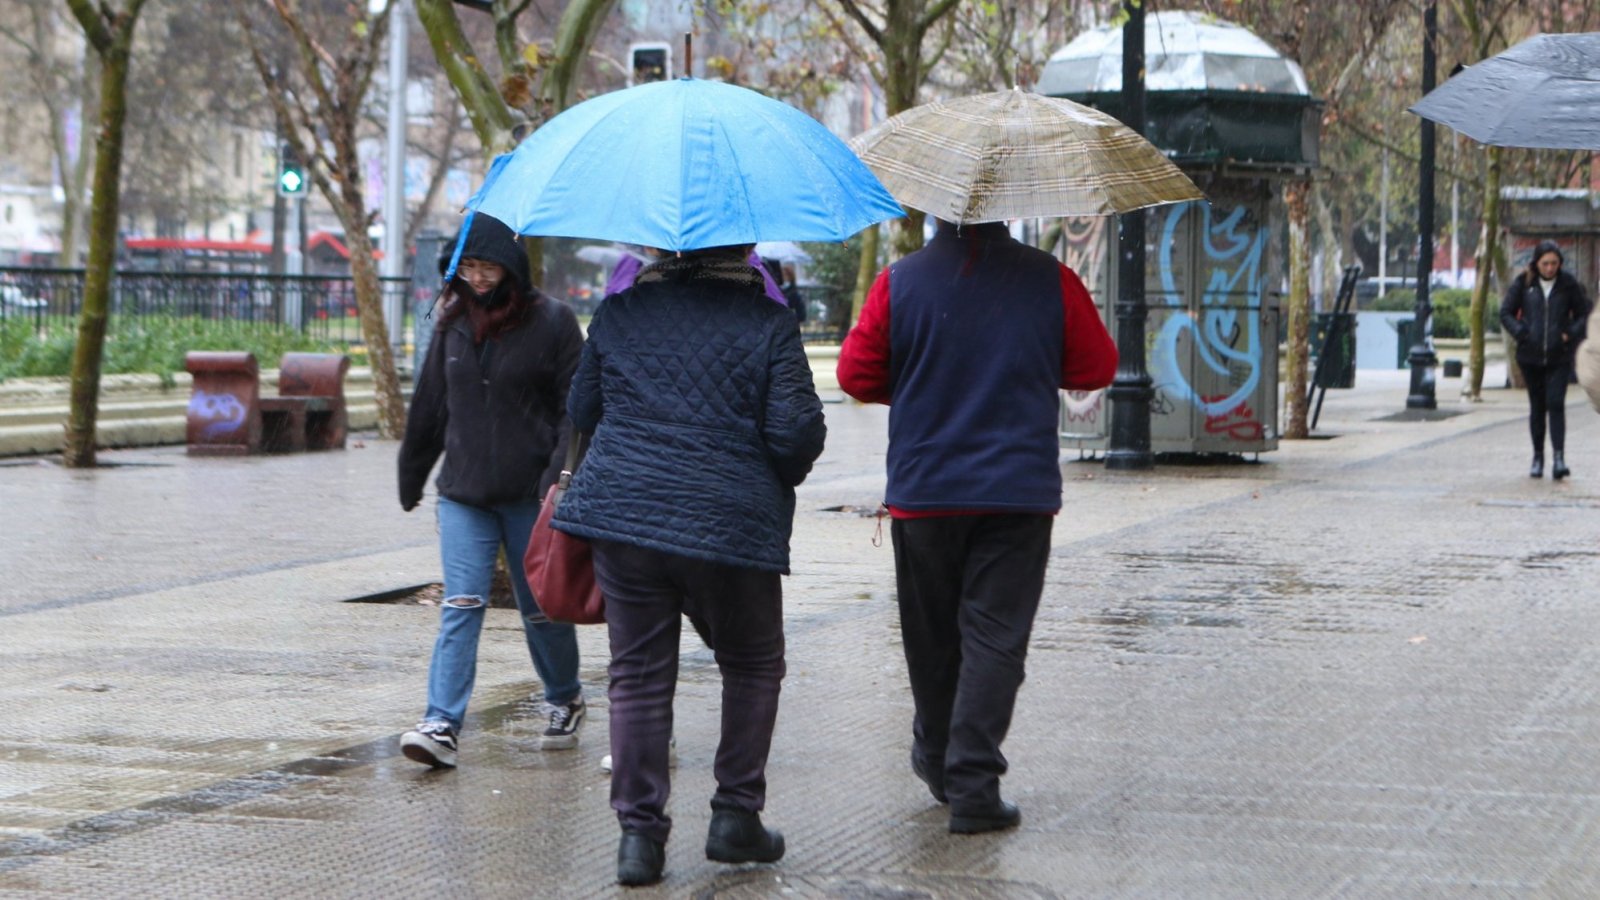 Personas bajo la lluvia en Santiago y caminando con paraguas.